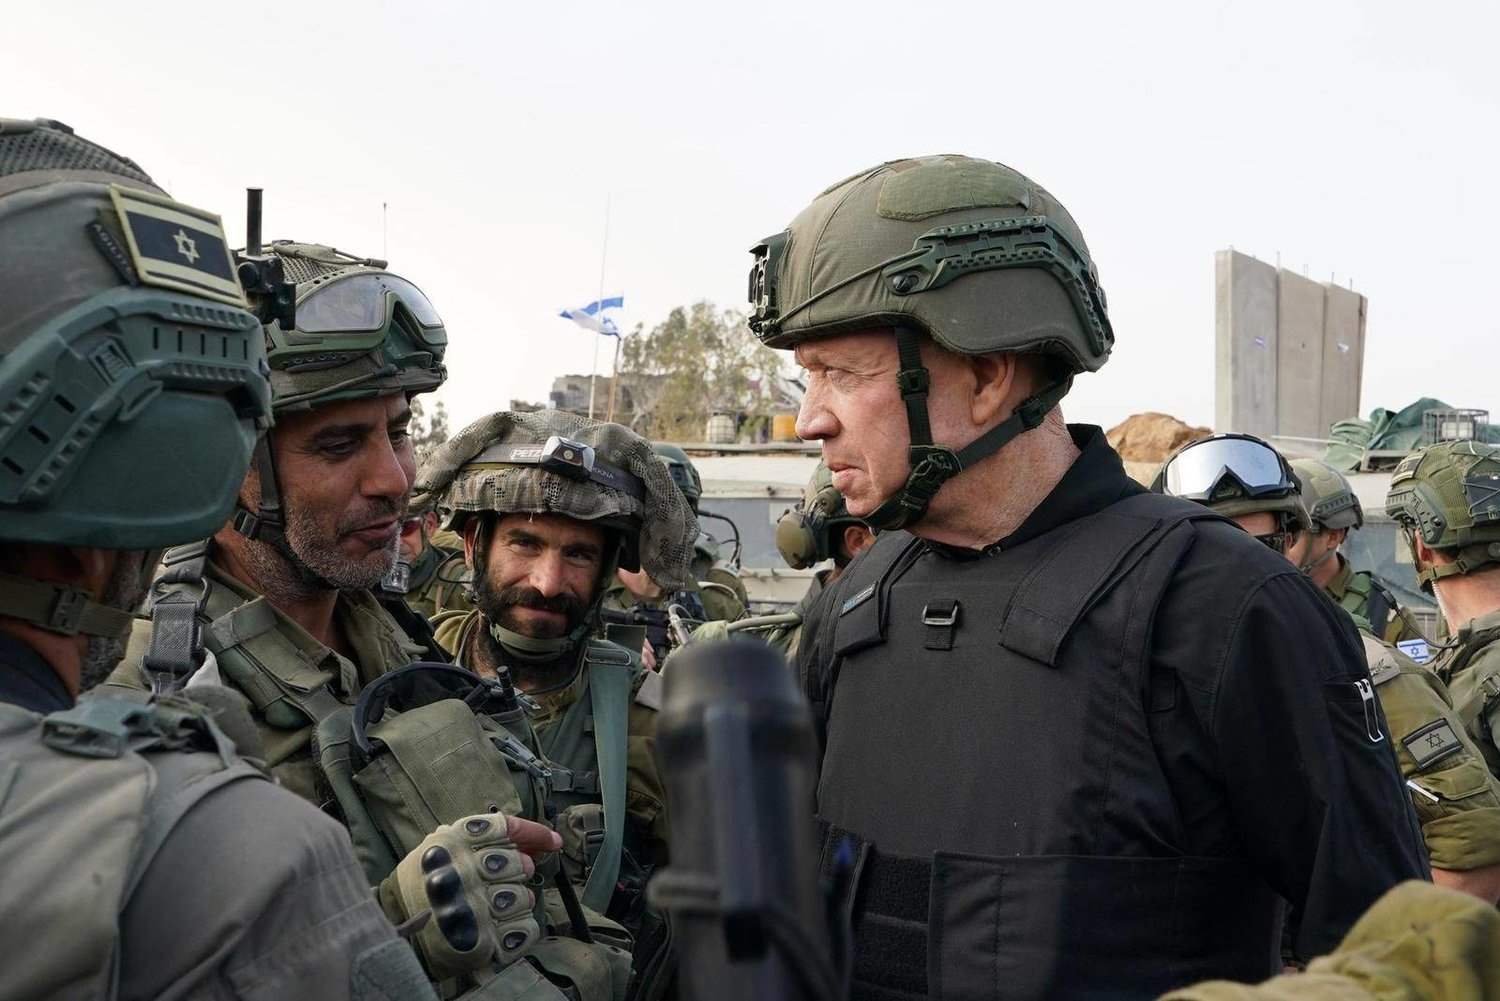 الجيش الإسرائيلي: استقالة رئيس شعبة الاستخبارات العسكرية لمسؤوليته عن أحداث 7 تشرين الأول